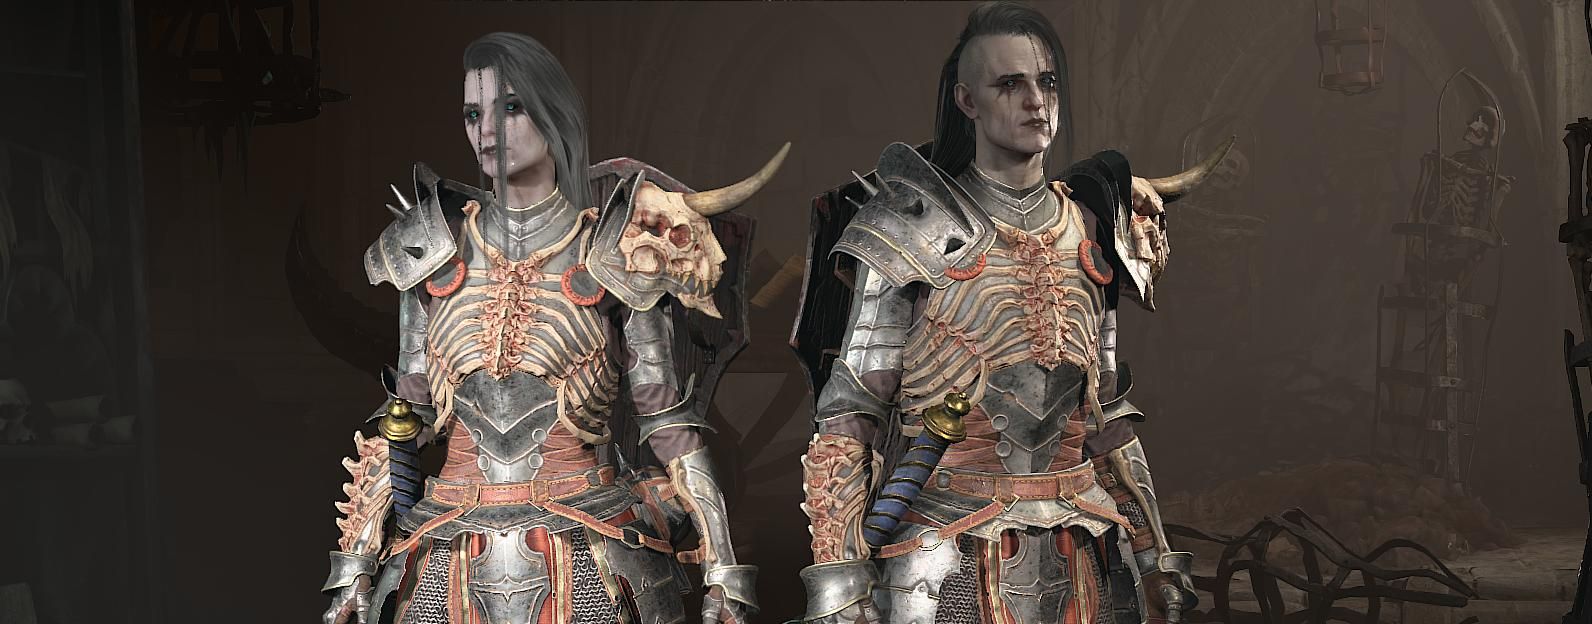 Некроманты в Diablo IV. Источник: Blizzard